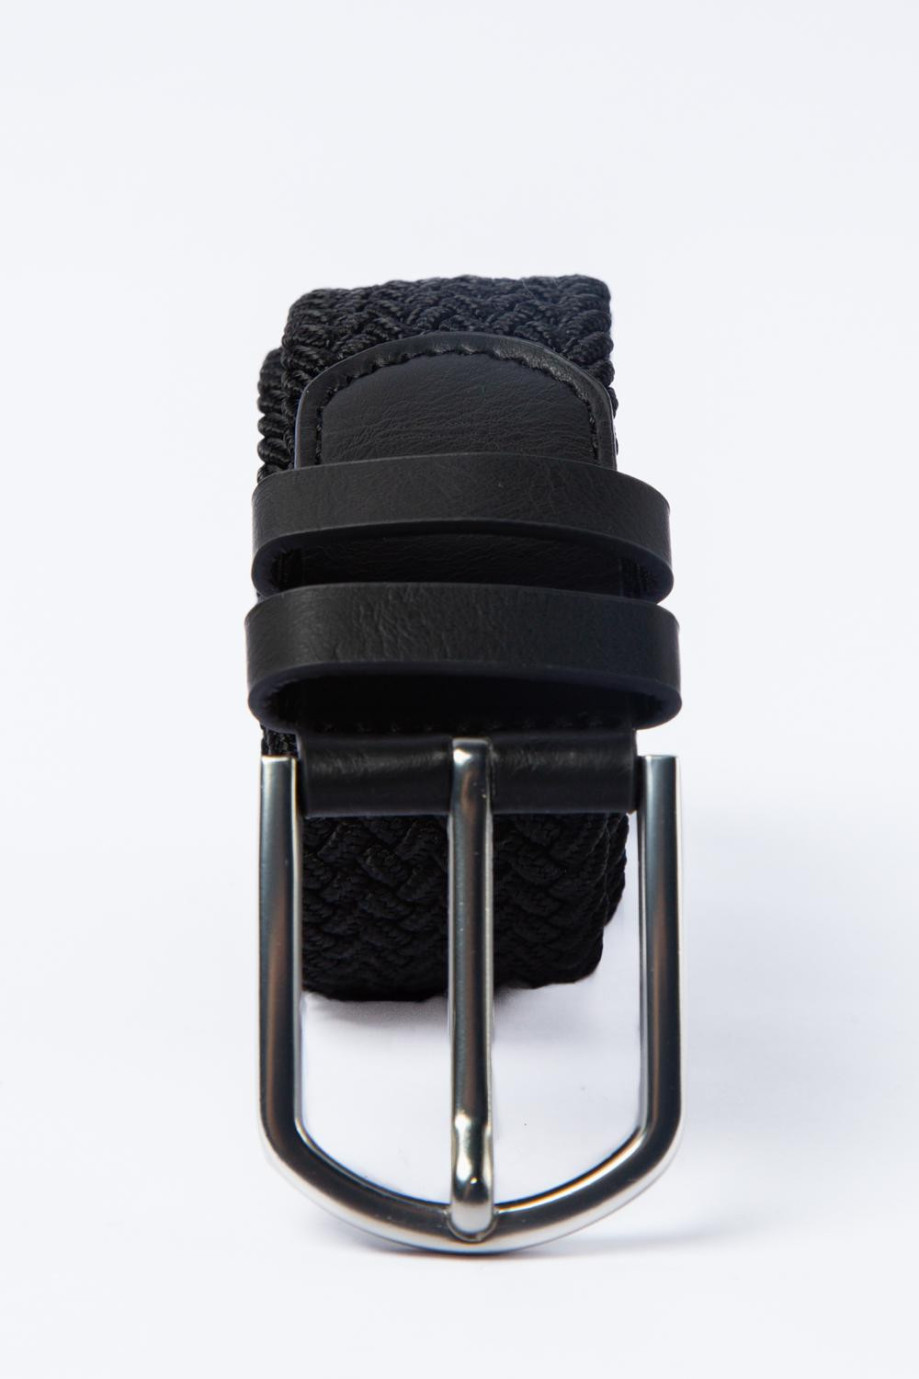 Cinturón negro trenzado con hebilla metálica y doble trabilla